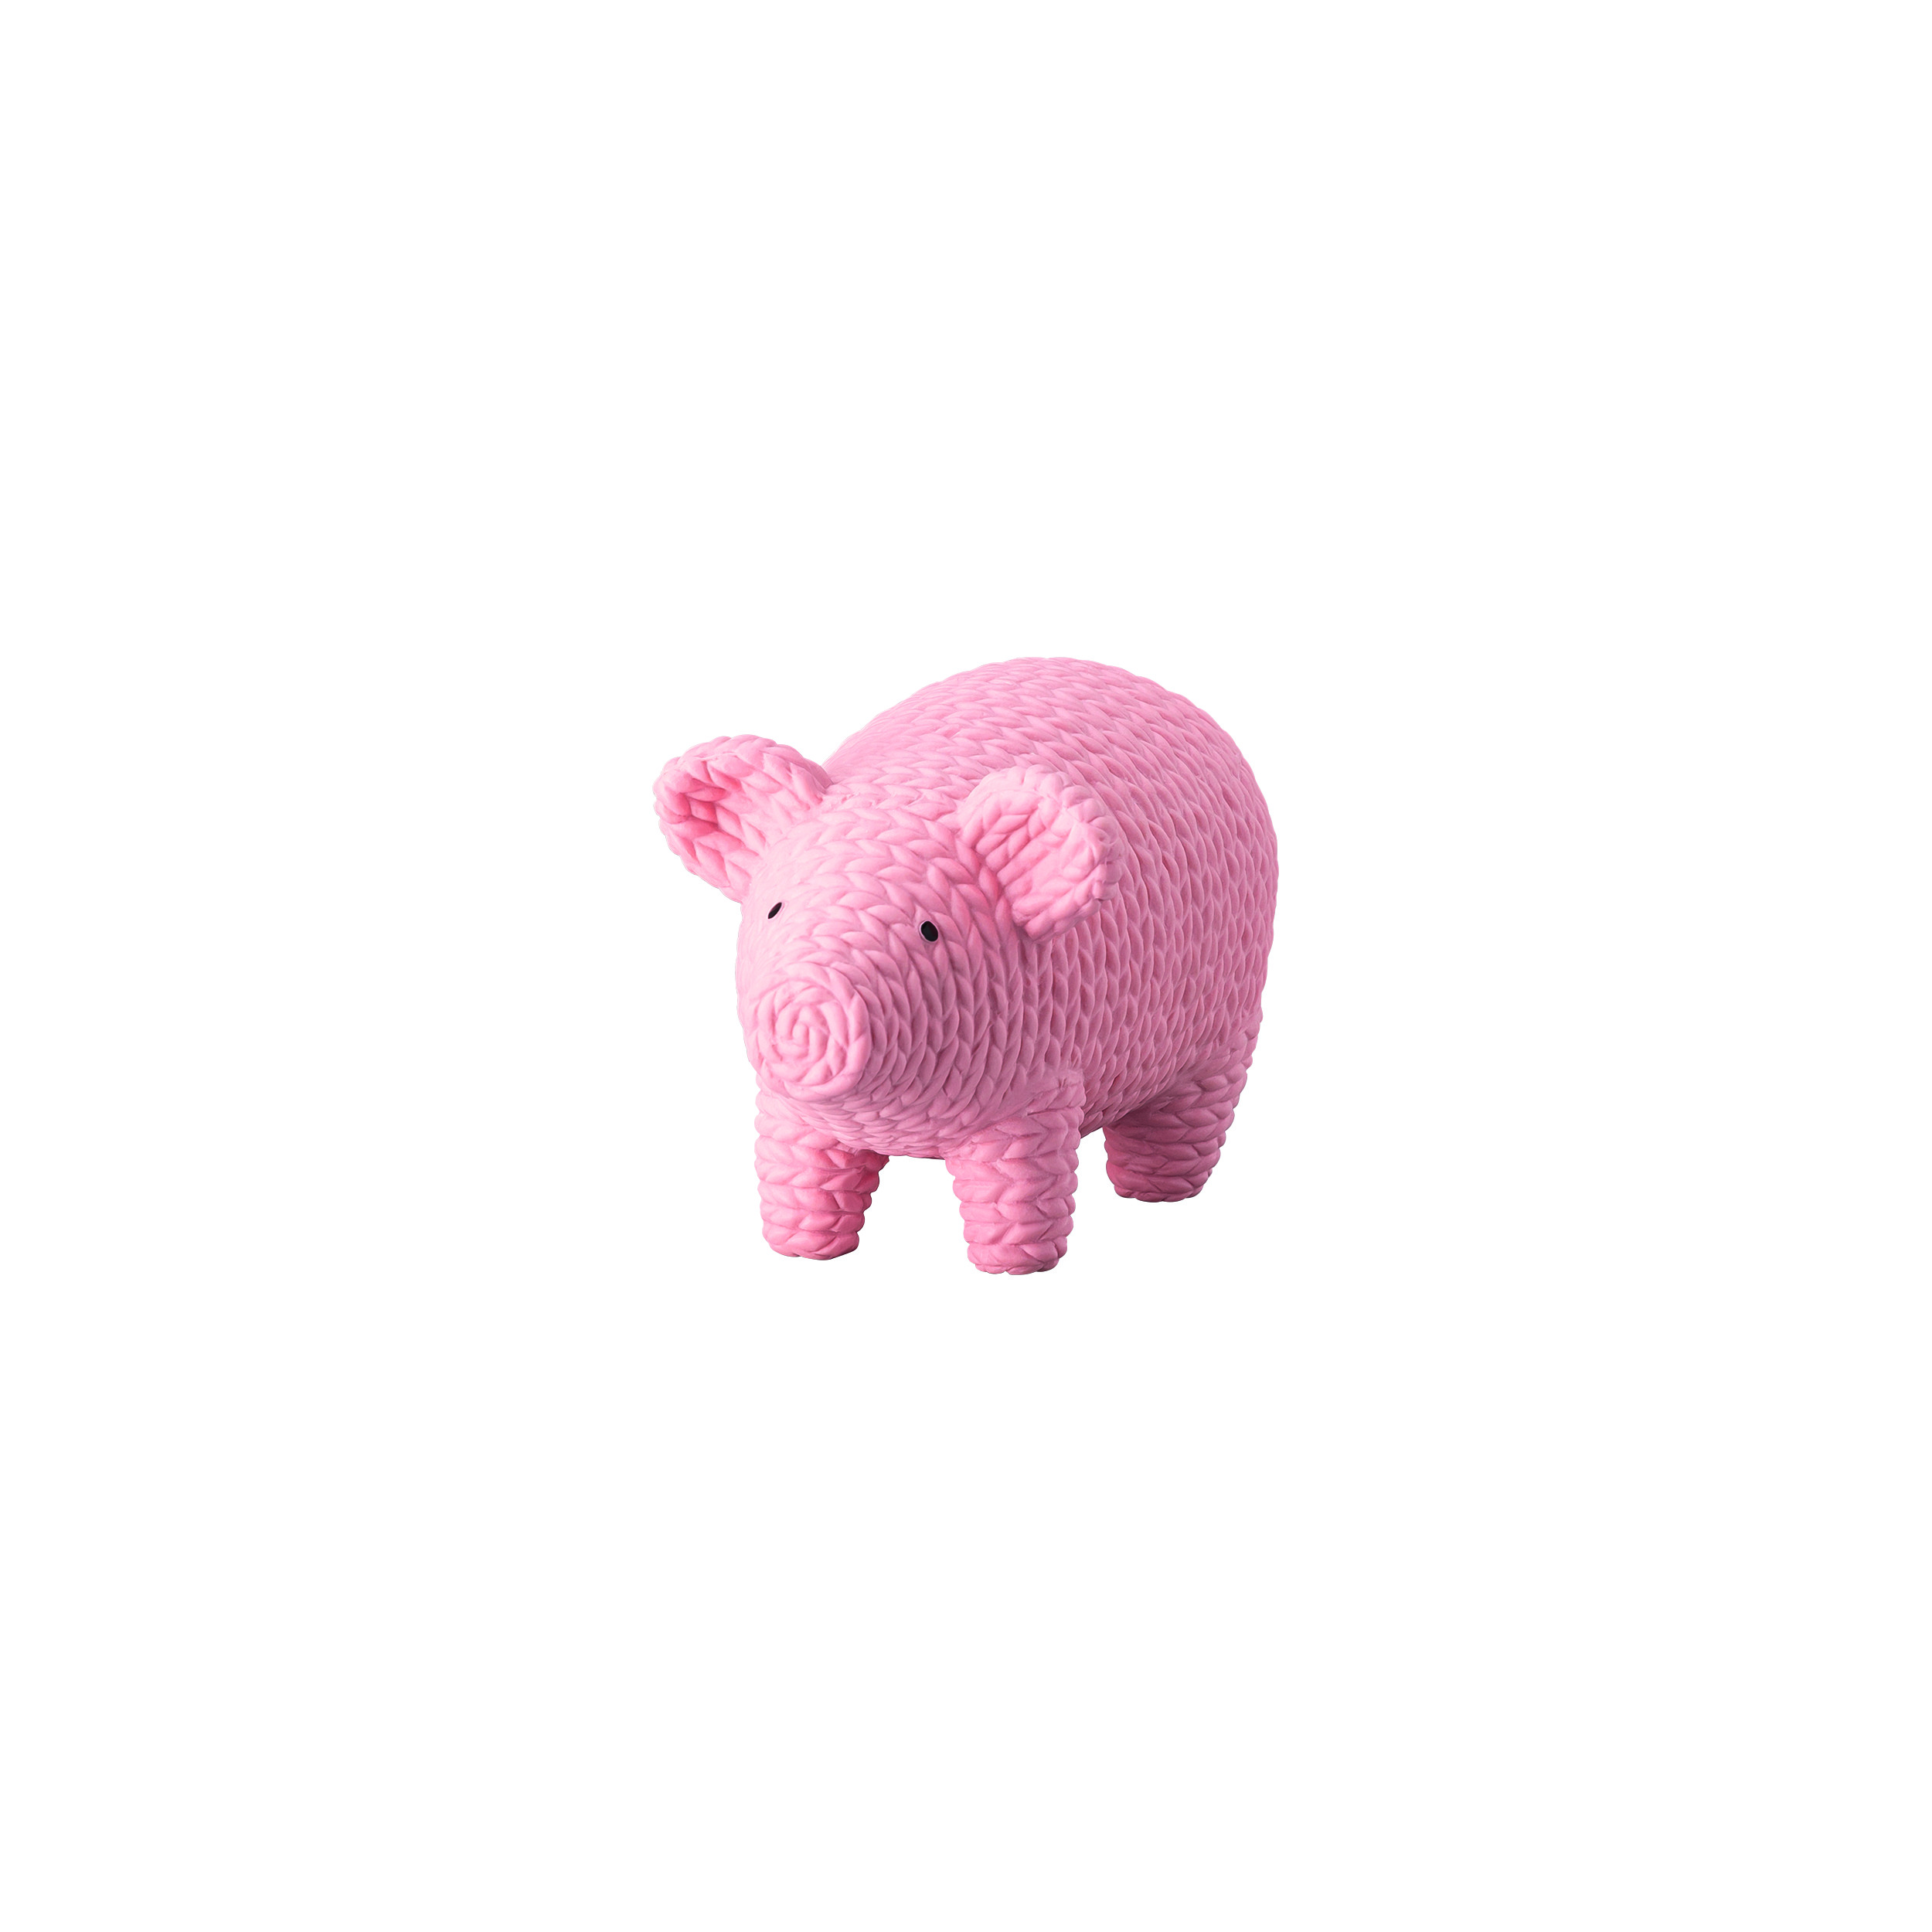 Pets - Pig Alley Rosé Schwein mittel 6cm Porzellan